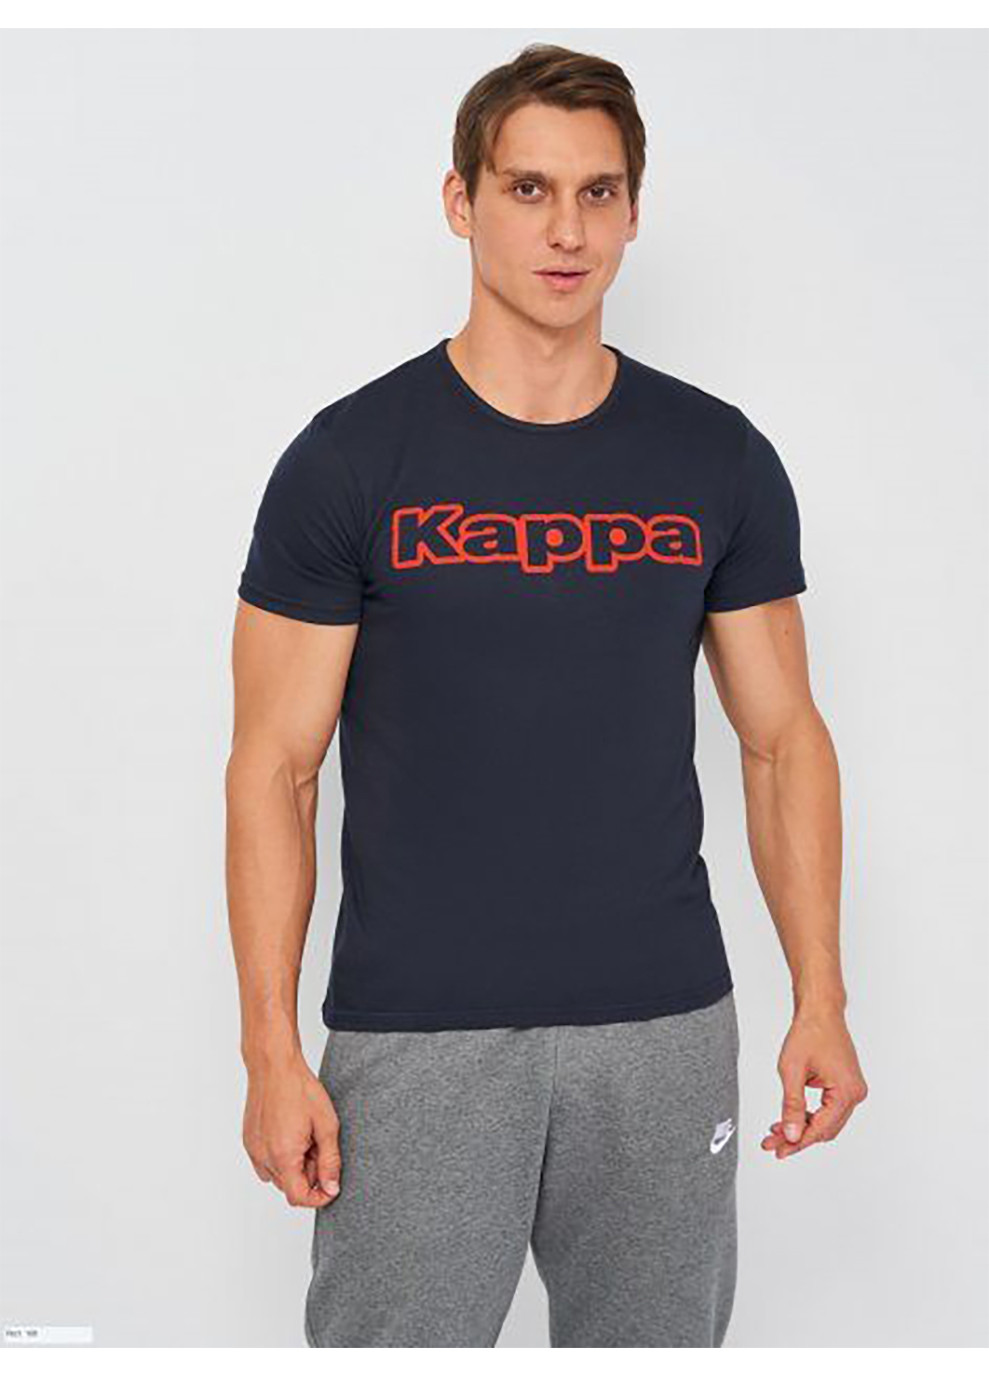 Темно-синя футболка t-shirt mezza manica girocollo stampa logo petto темно-синій xl чоловік k1335 k1335 blunavy-xl Kappa